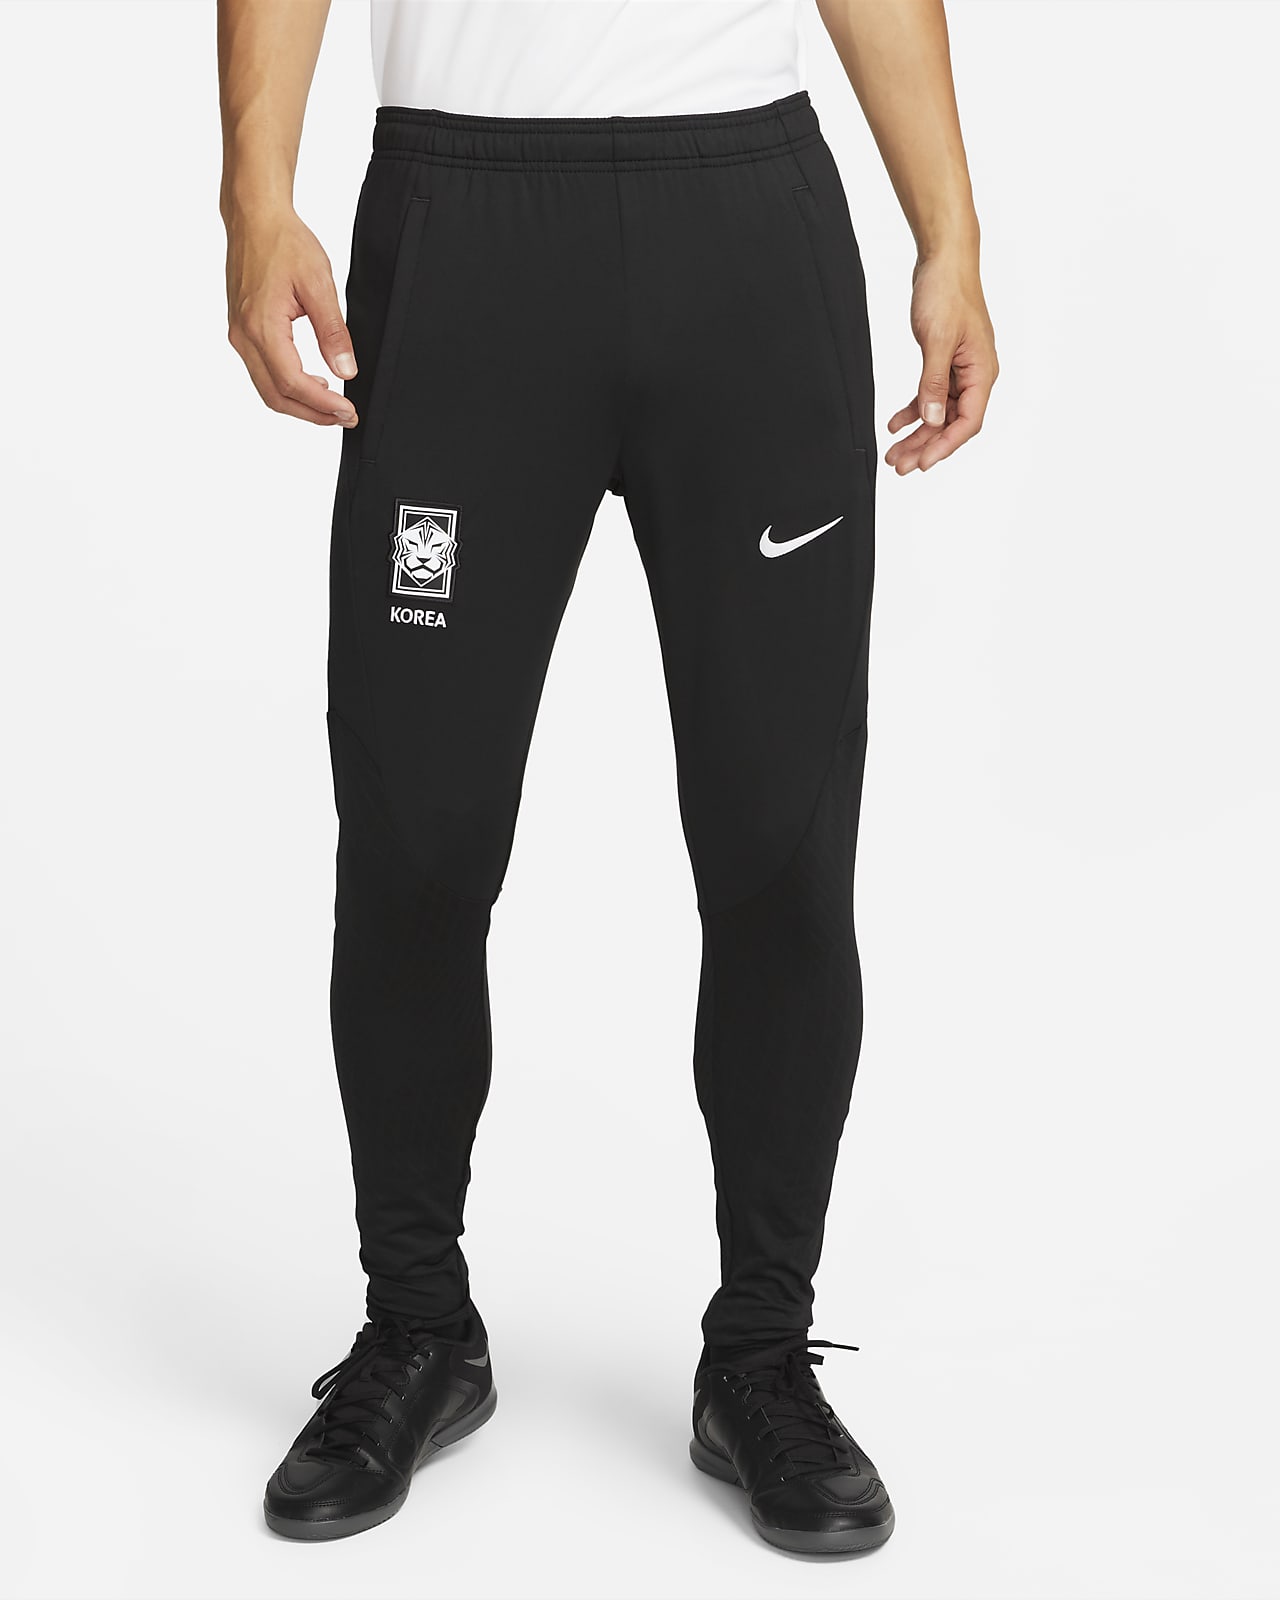 Pantalon de football en maille Nike Dri-FIT Corée Strike pour homme